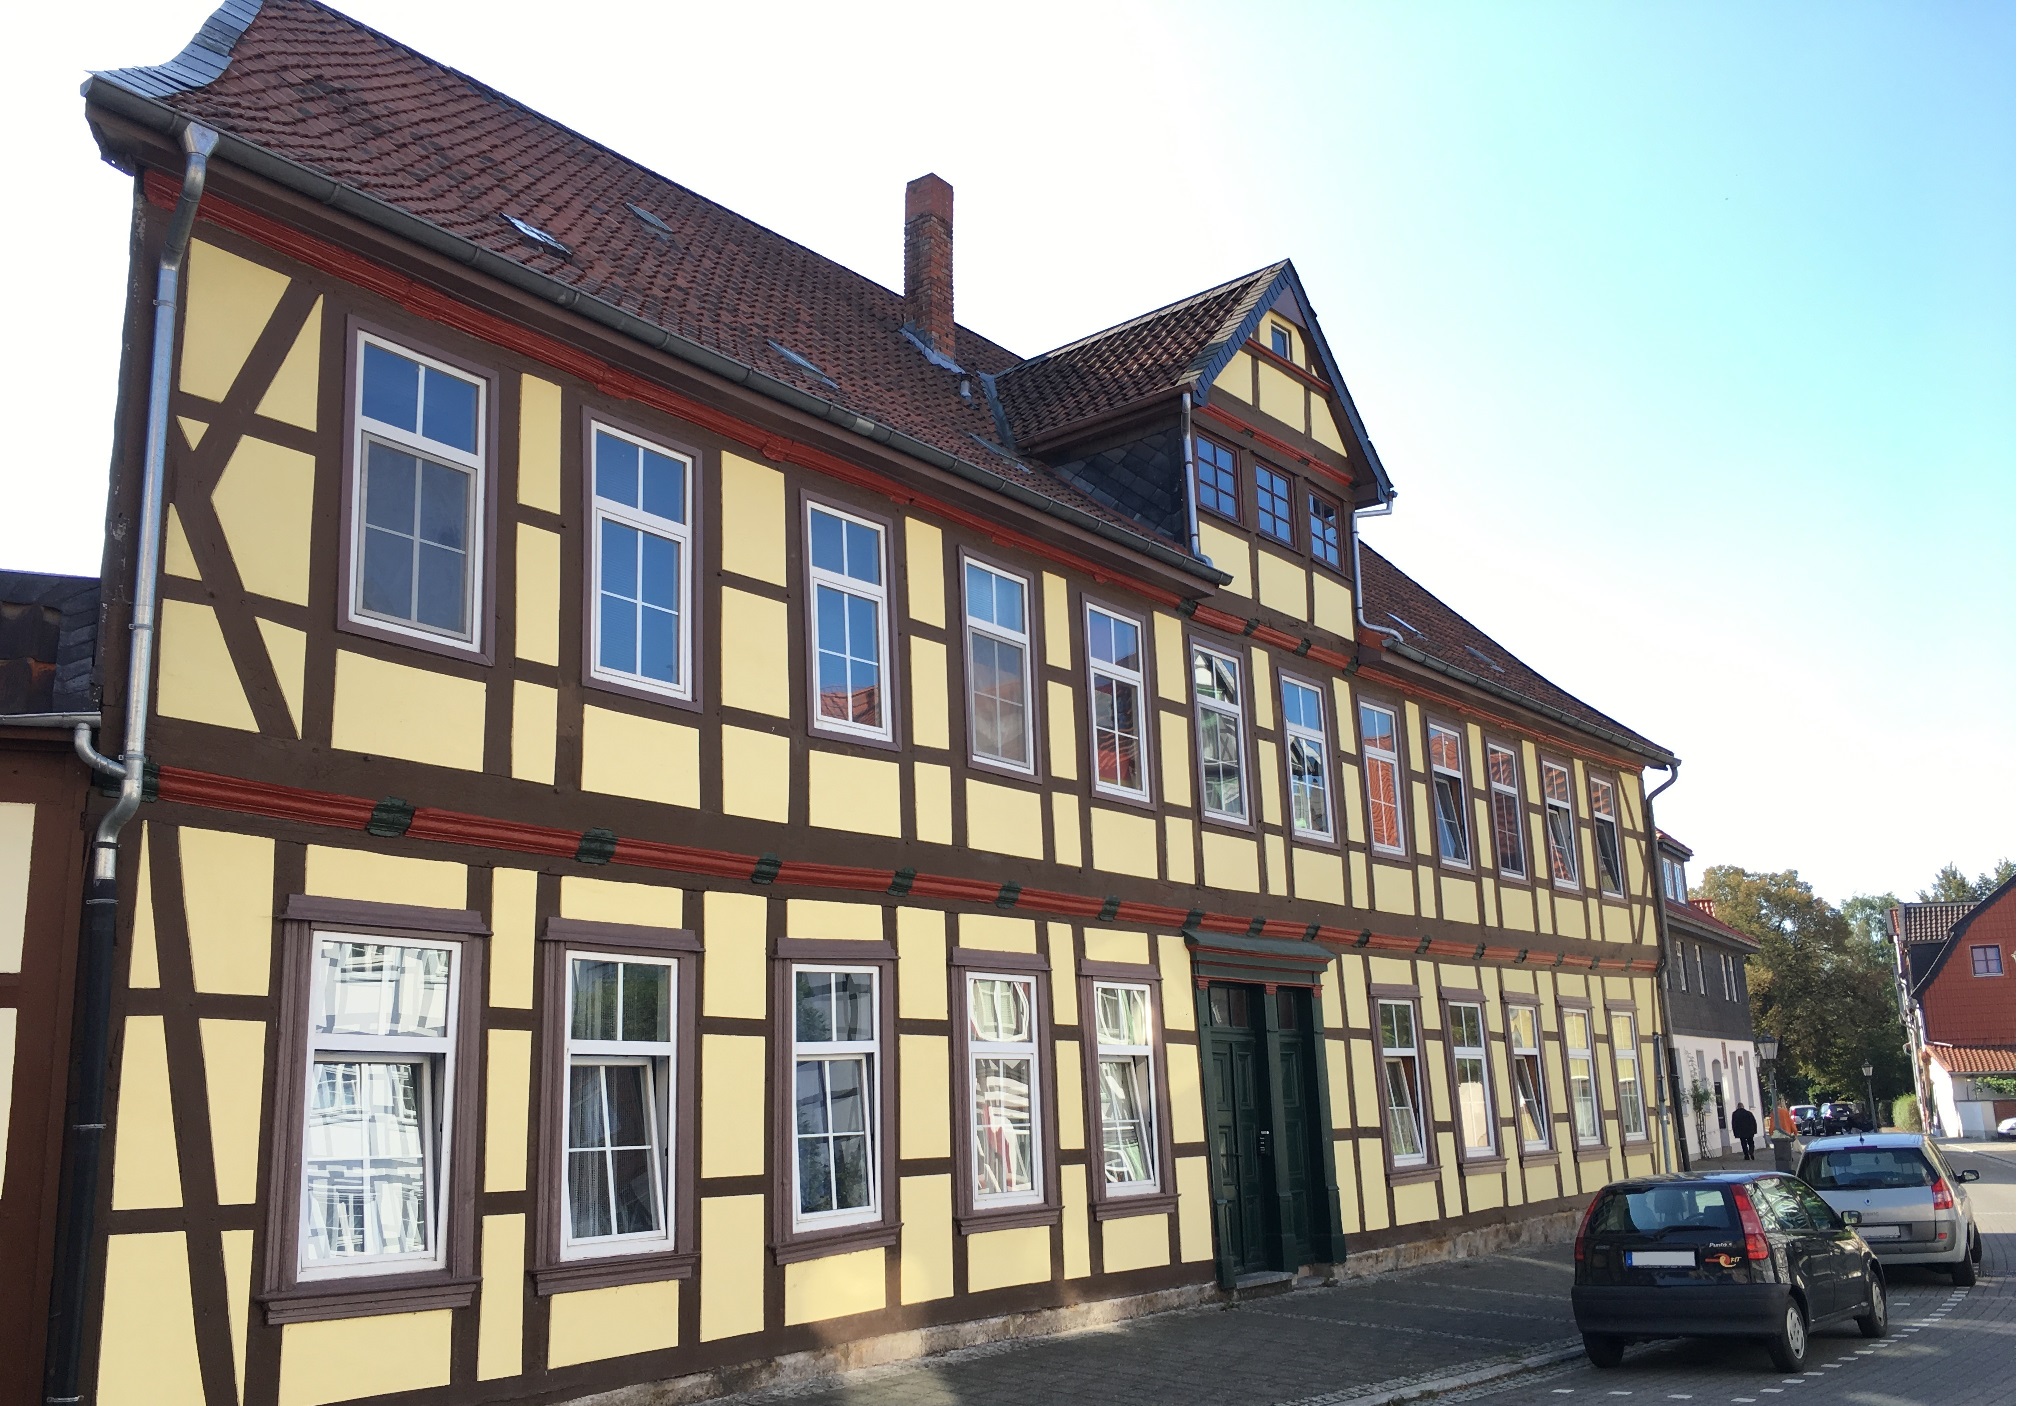 VERKAUFT: Wunderschönes Fachwerkhaus in der Altstadt von Peine mit zusätzlichem 400m²-Baugrundstück